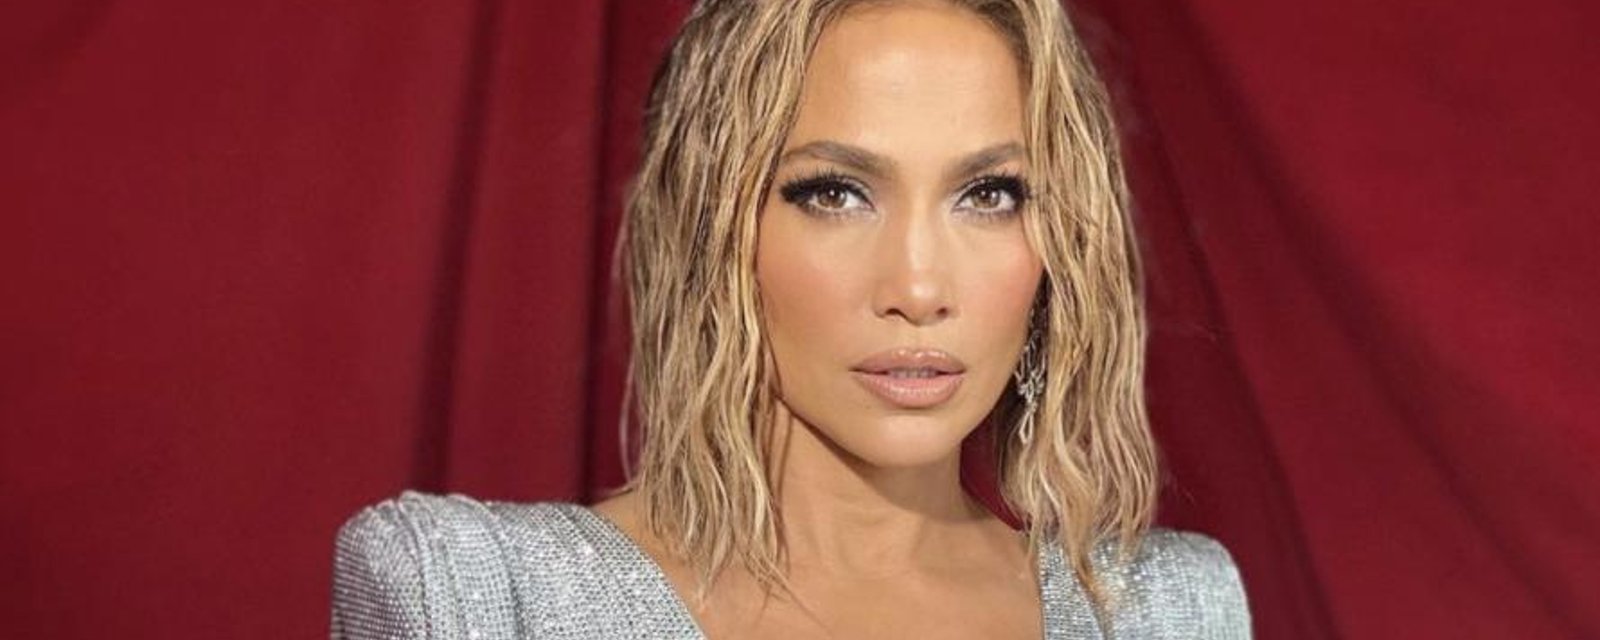 Jennifer Lopez pose en tenue d'Ève sur Instagram et on n'en revient pas qu'elle ait 51 ans